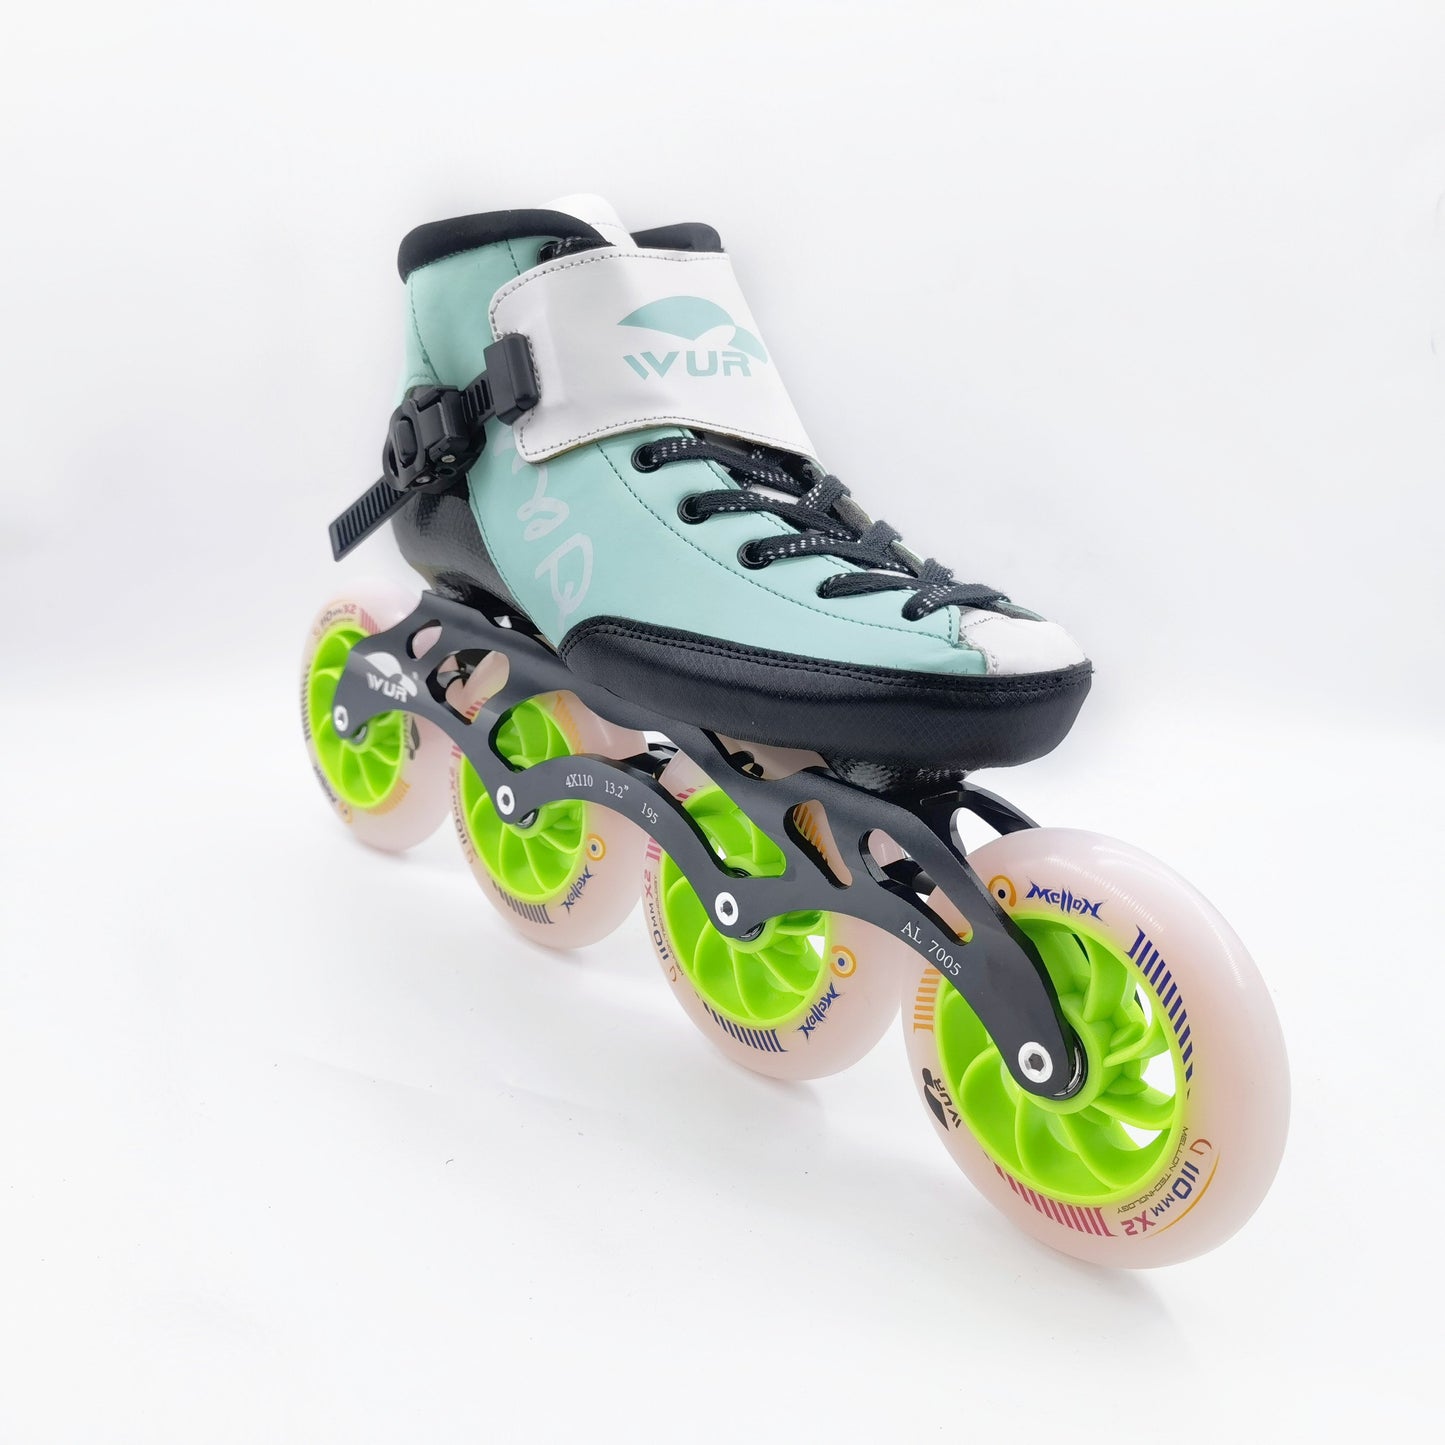 WURSkate model CX Mint speed skate